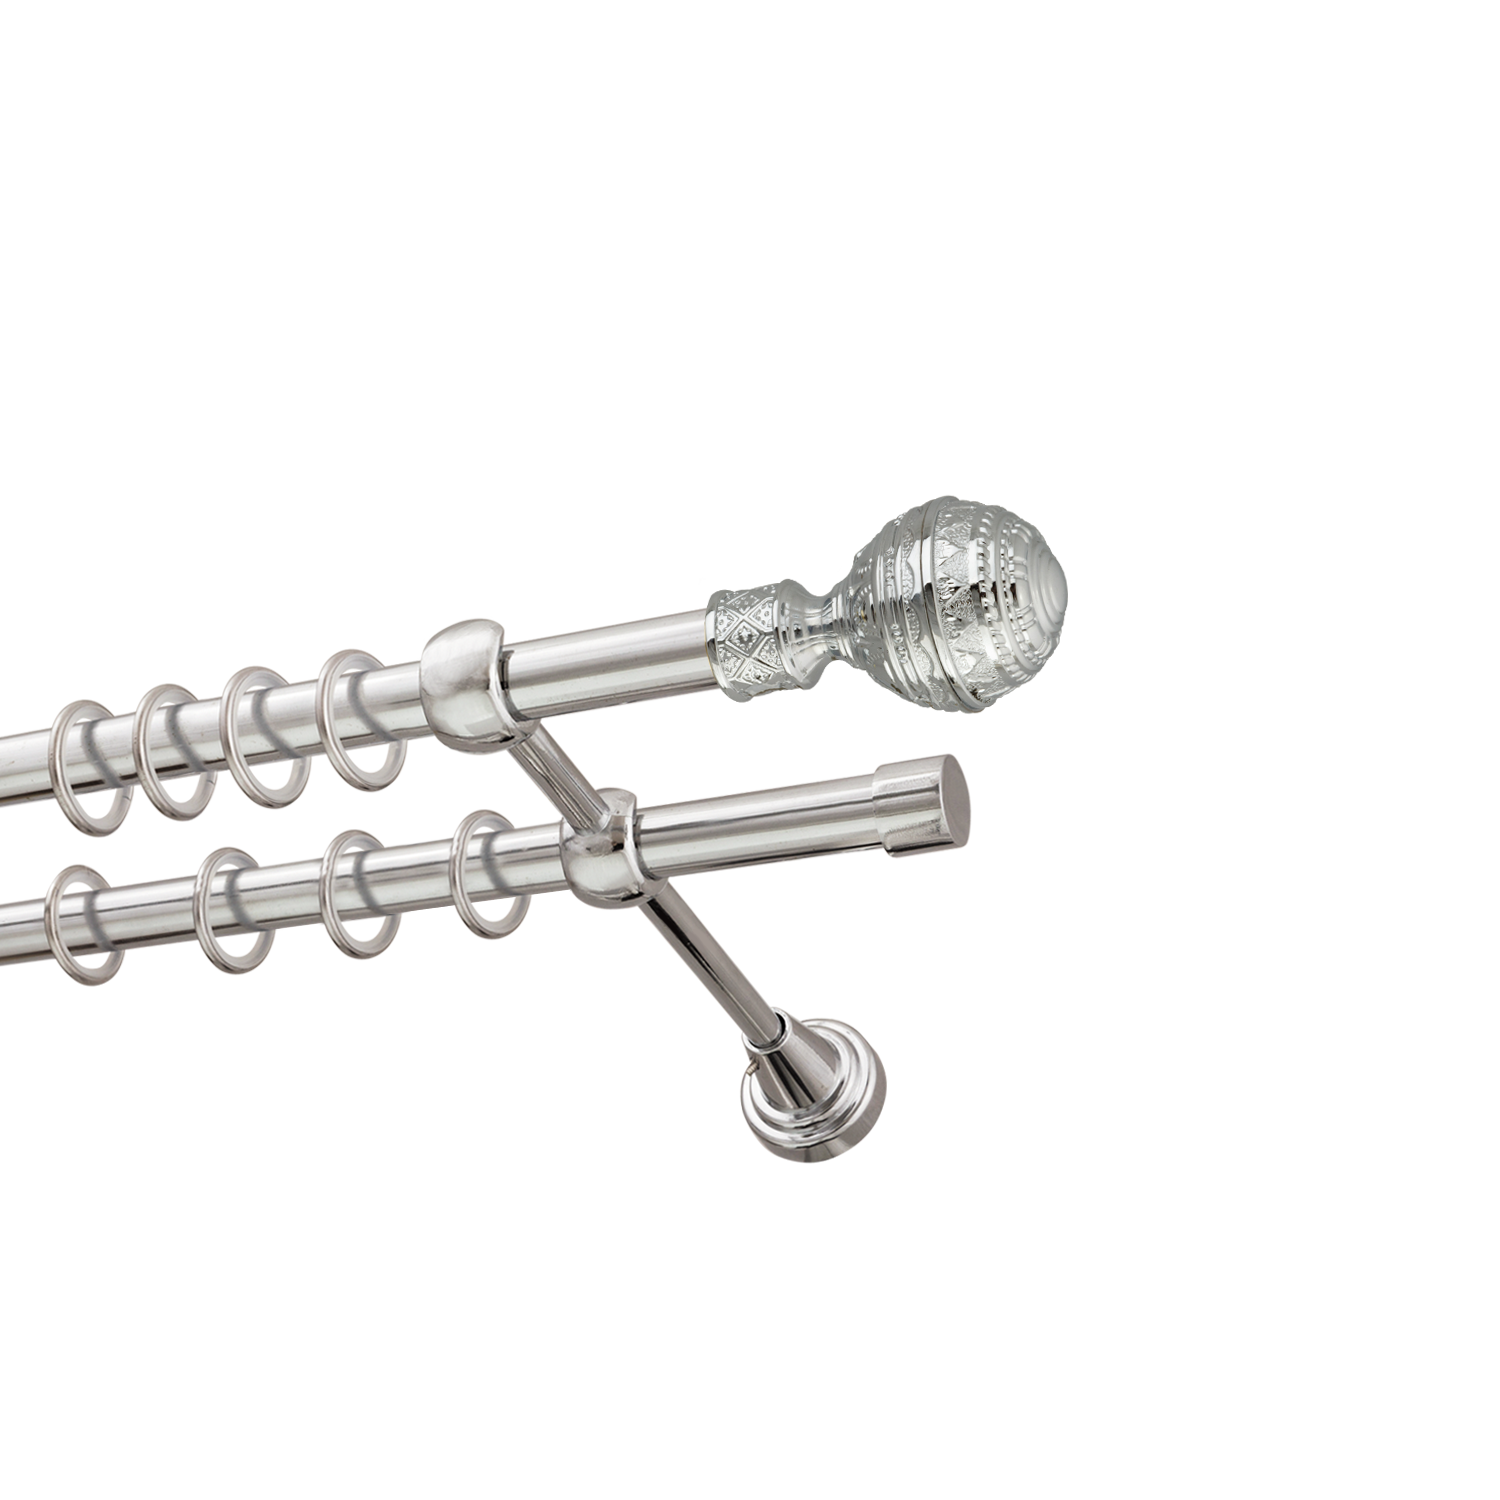 Металлический карниз для штор Роял, двухрядный 16/16 мм, серебро, гладкая штанга, длина 240 см - фото Wikidecor.ru